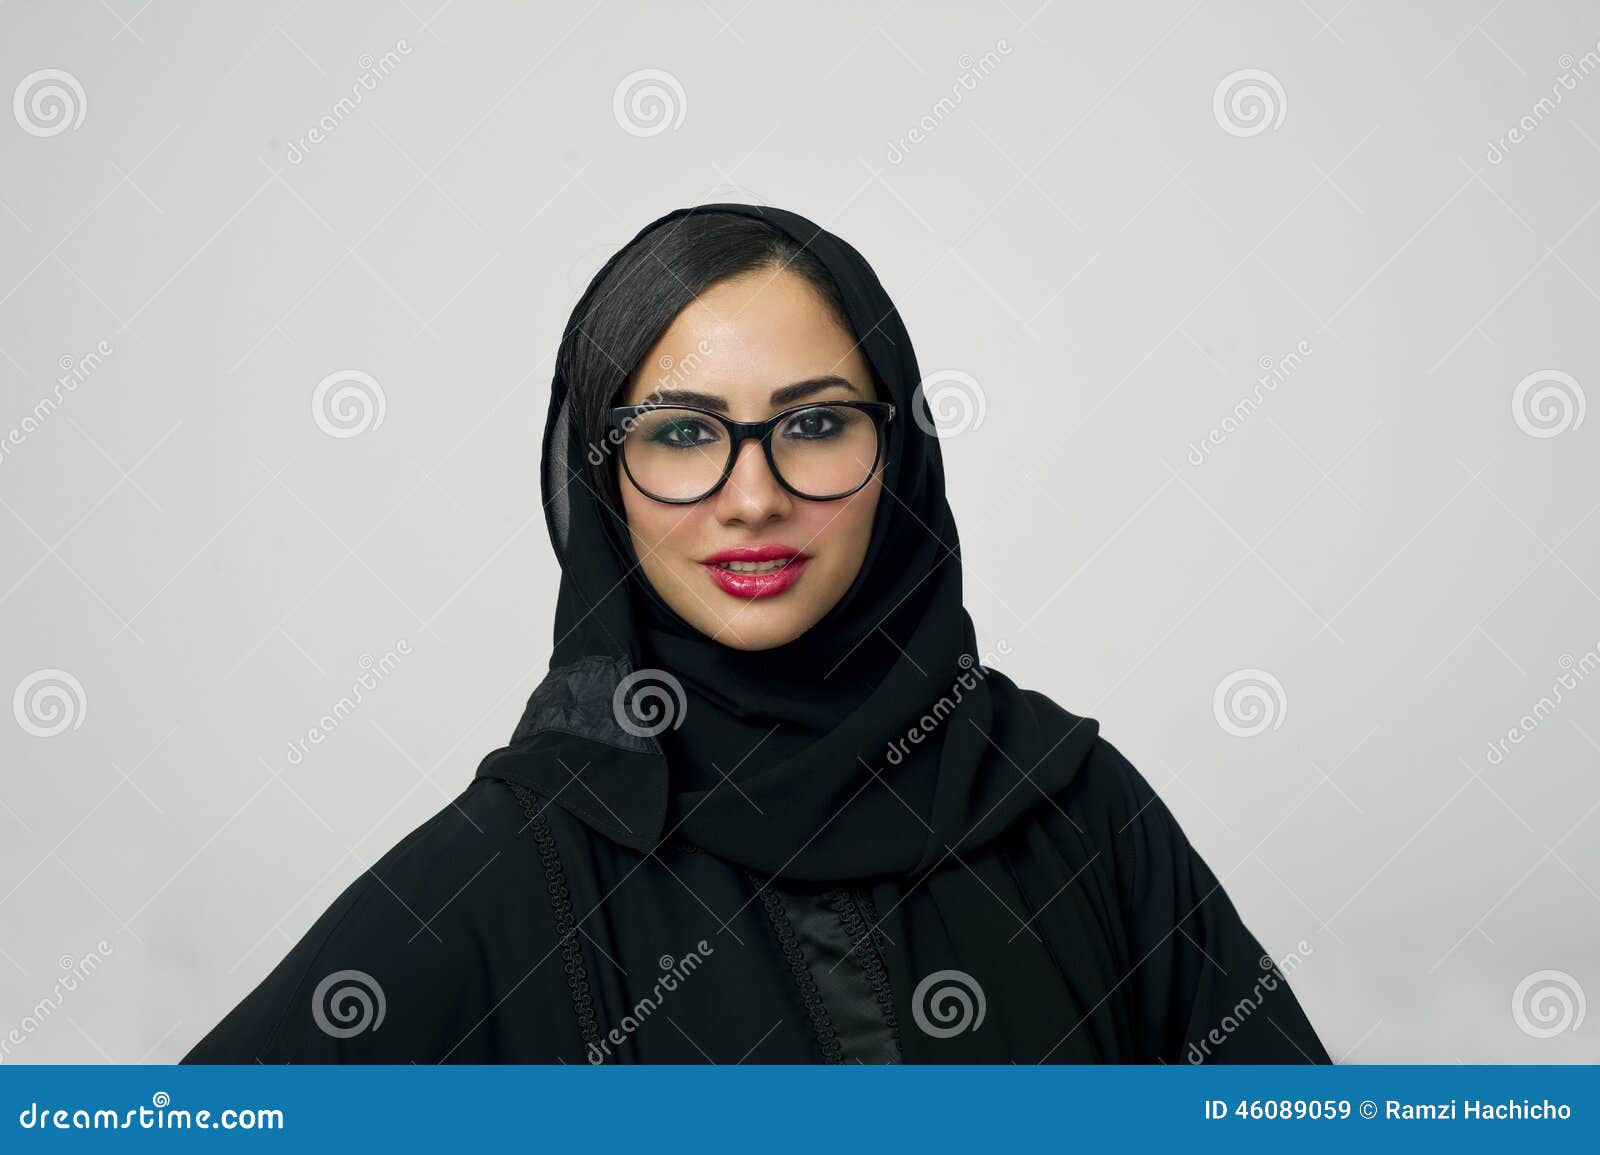 Arab Hijab Bbw